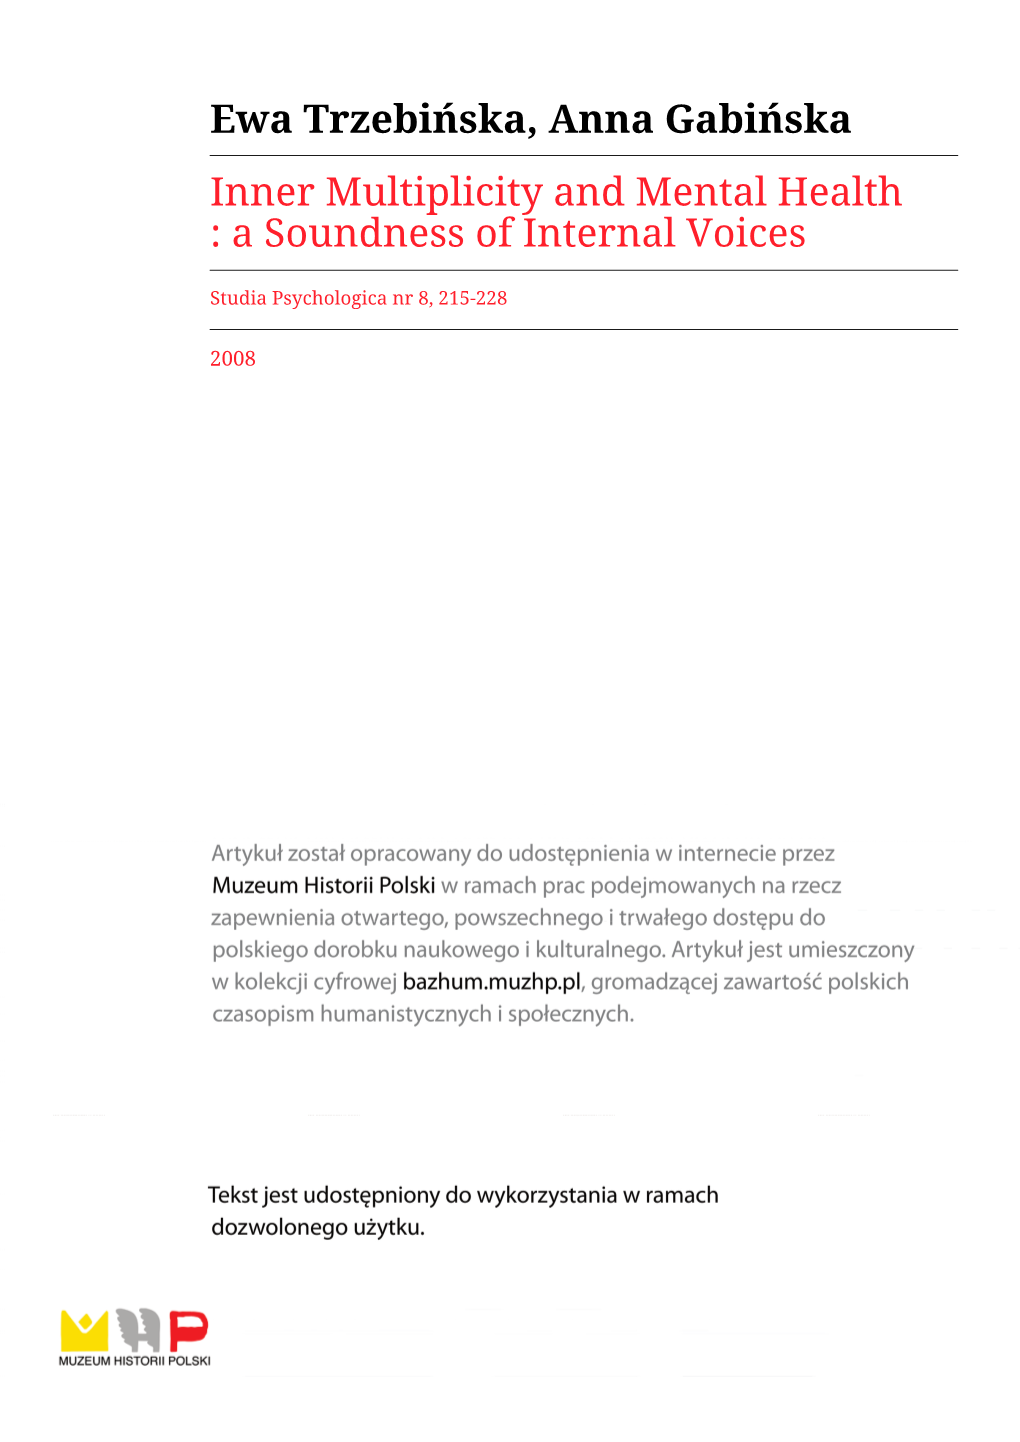 Ewa Trzebińska, Anna Gabińska Inner Multiplicity and Mental Health : a Soundness of Internal Voices